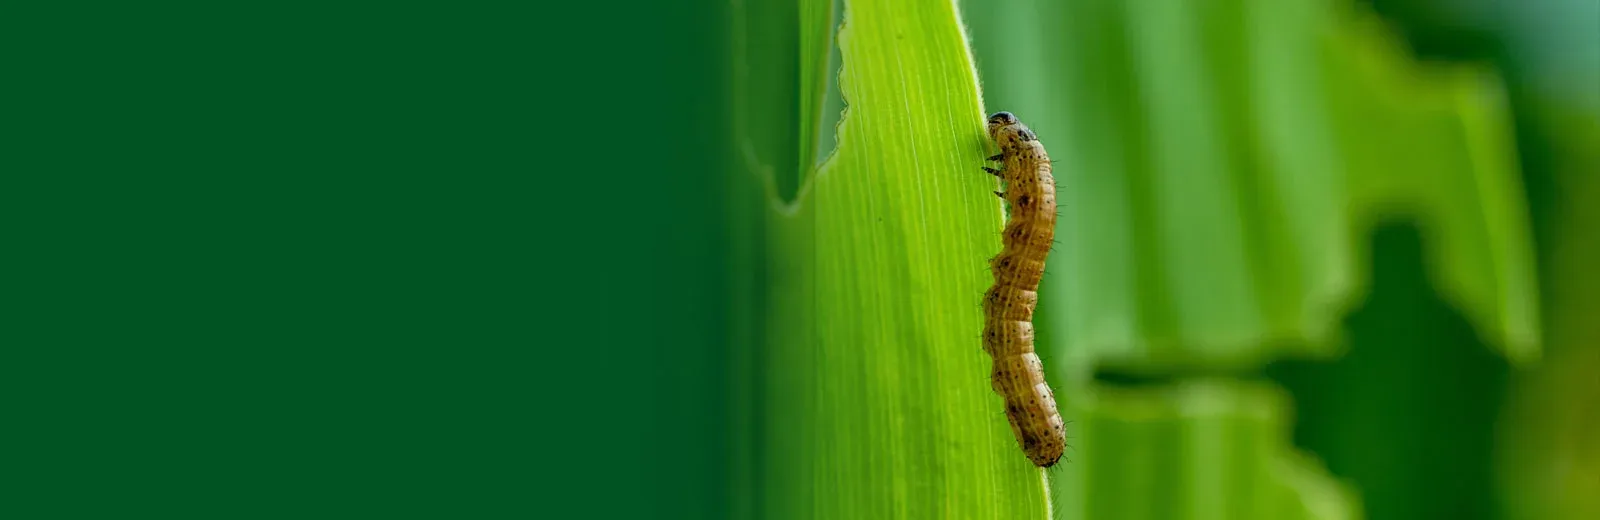 armyworm on grass